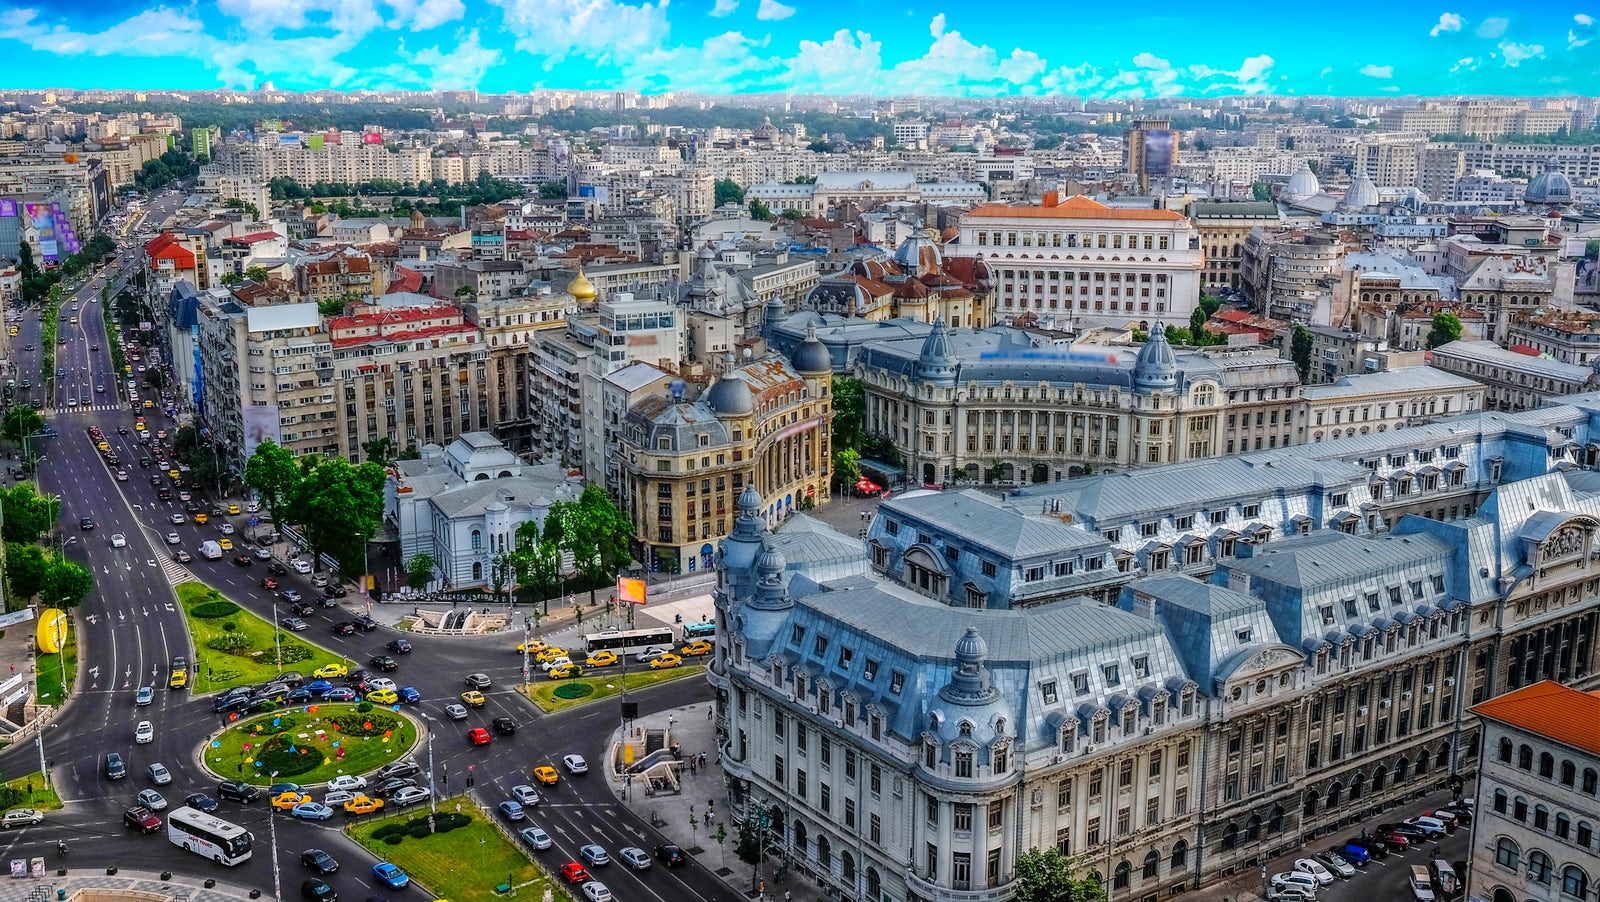 Бухарест — великий город Румынии. И пусть у него нет красоты Будапешта или славы Праги